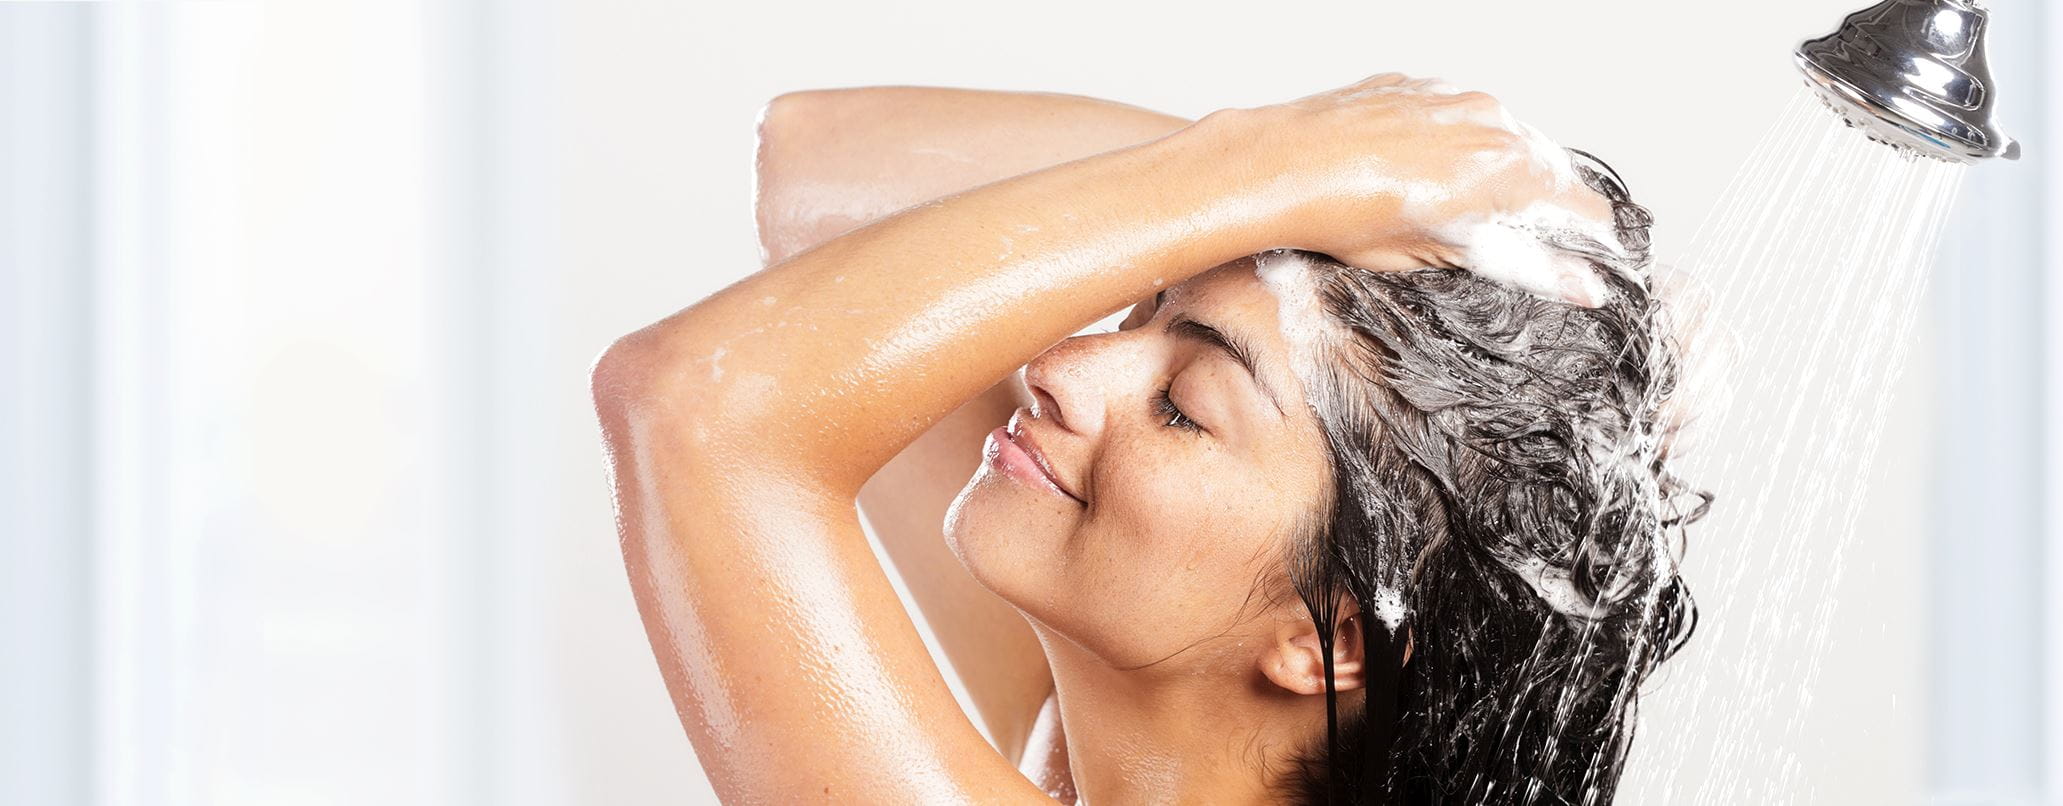 Femme se lave cheveux sous la douche